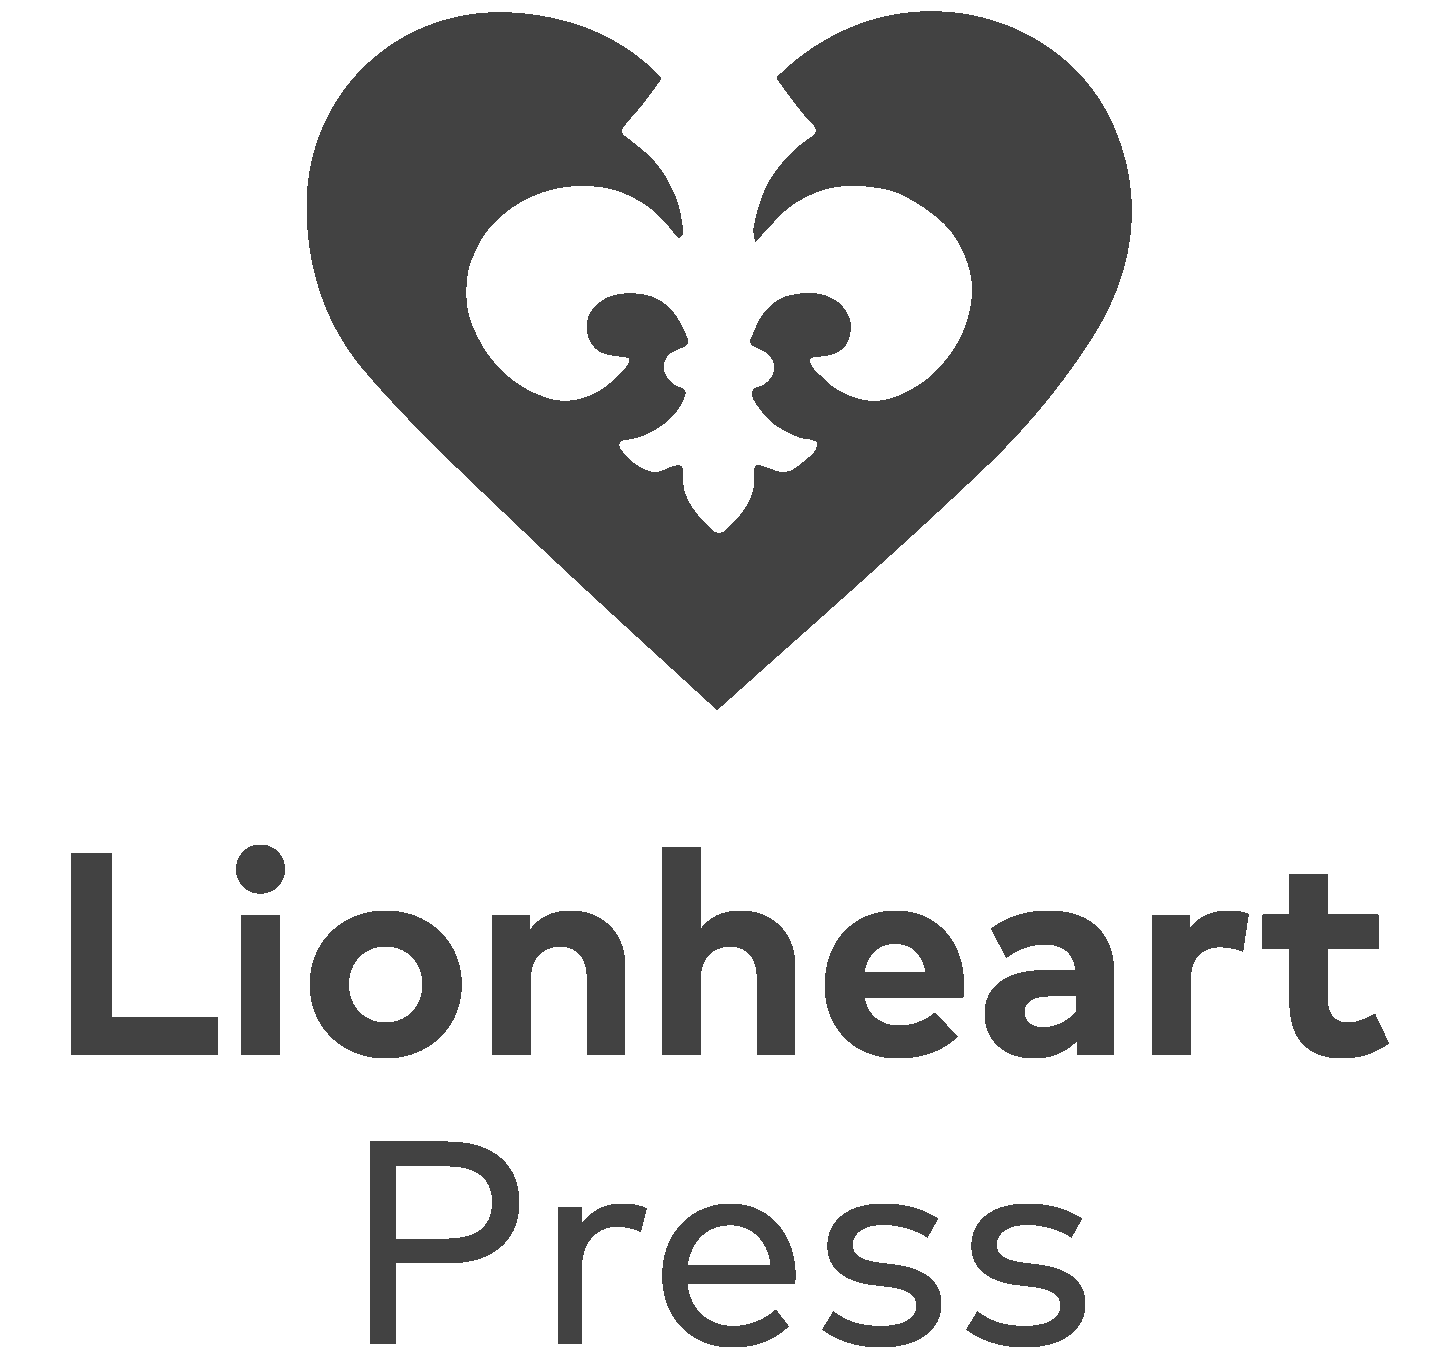 Lionheart Press